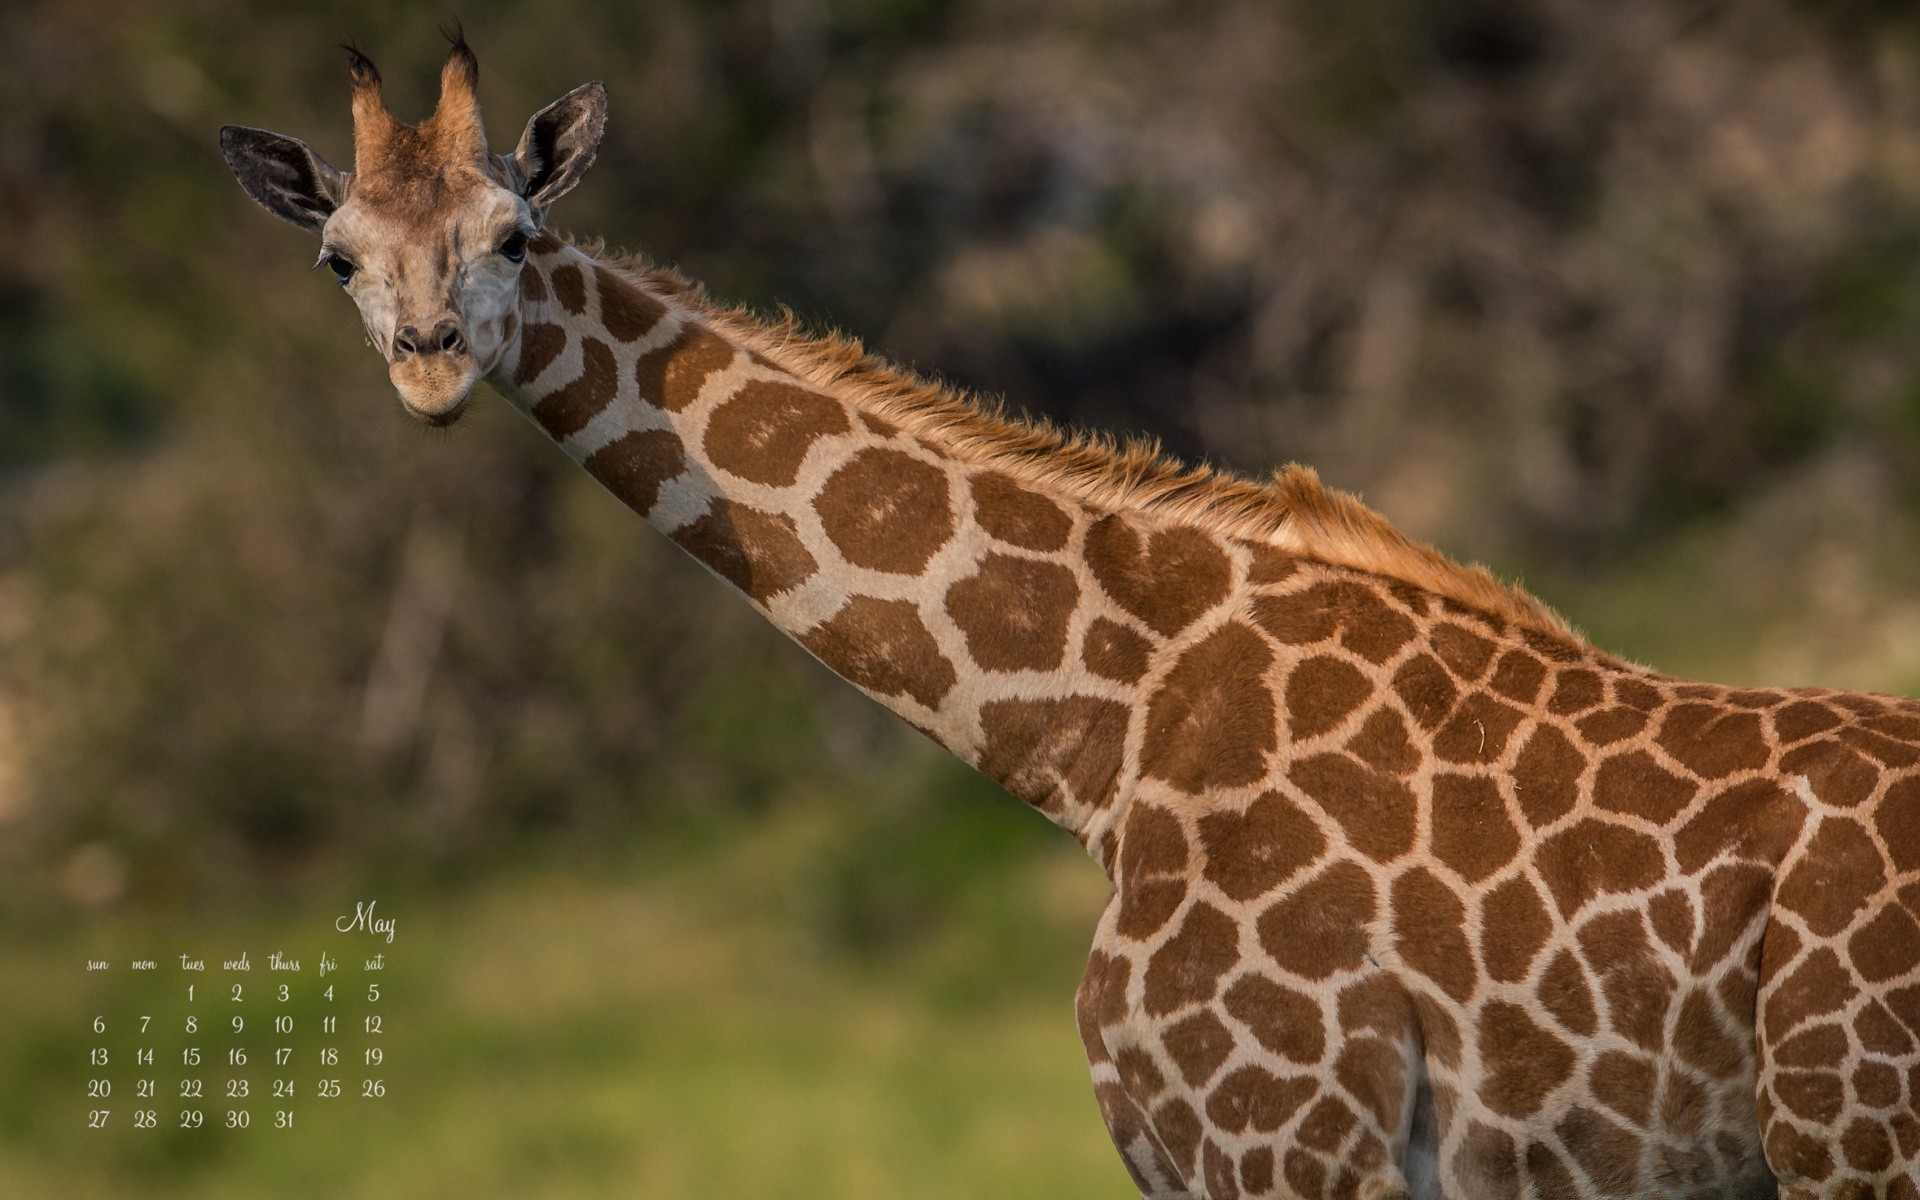 животные дикой природы природа млекопитающее жираф дикий сафари животное шея на открытом воздухе саванна долго парк травоядное трава портрет сохранение